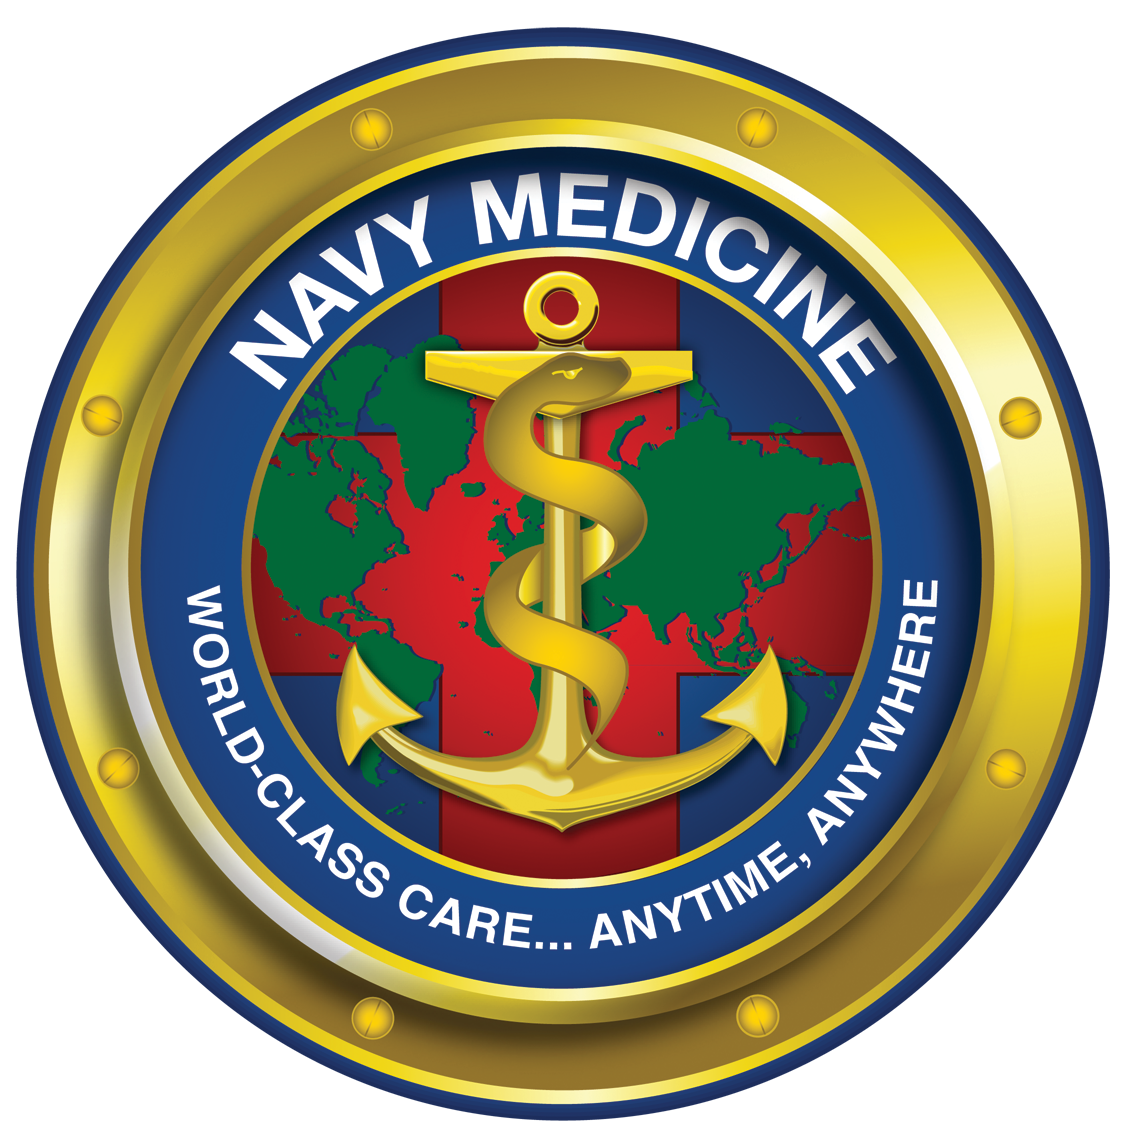 Us medium. Военно-морской госпиталь герб. U.S. Naval Medical Corps. Военно-морской медицинский центр в Портсмуте. Us Navy Medical Corps logo.